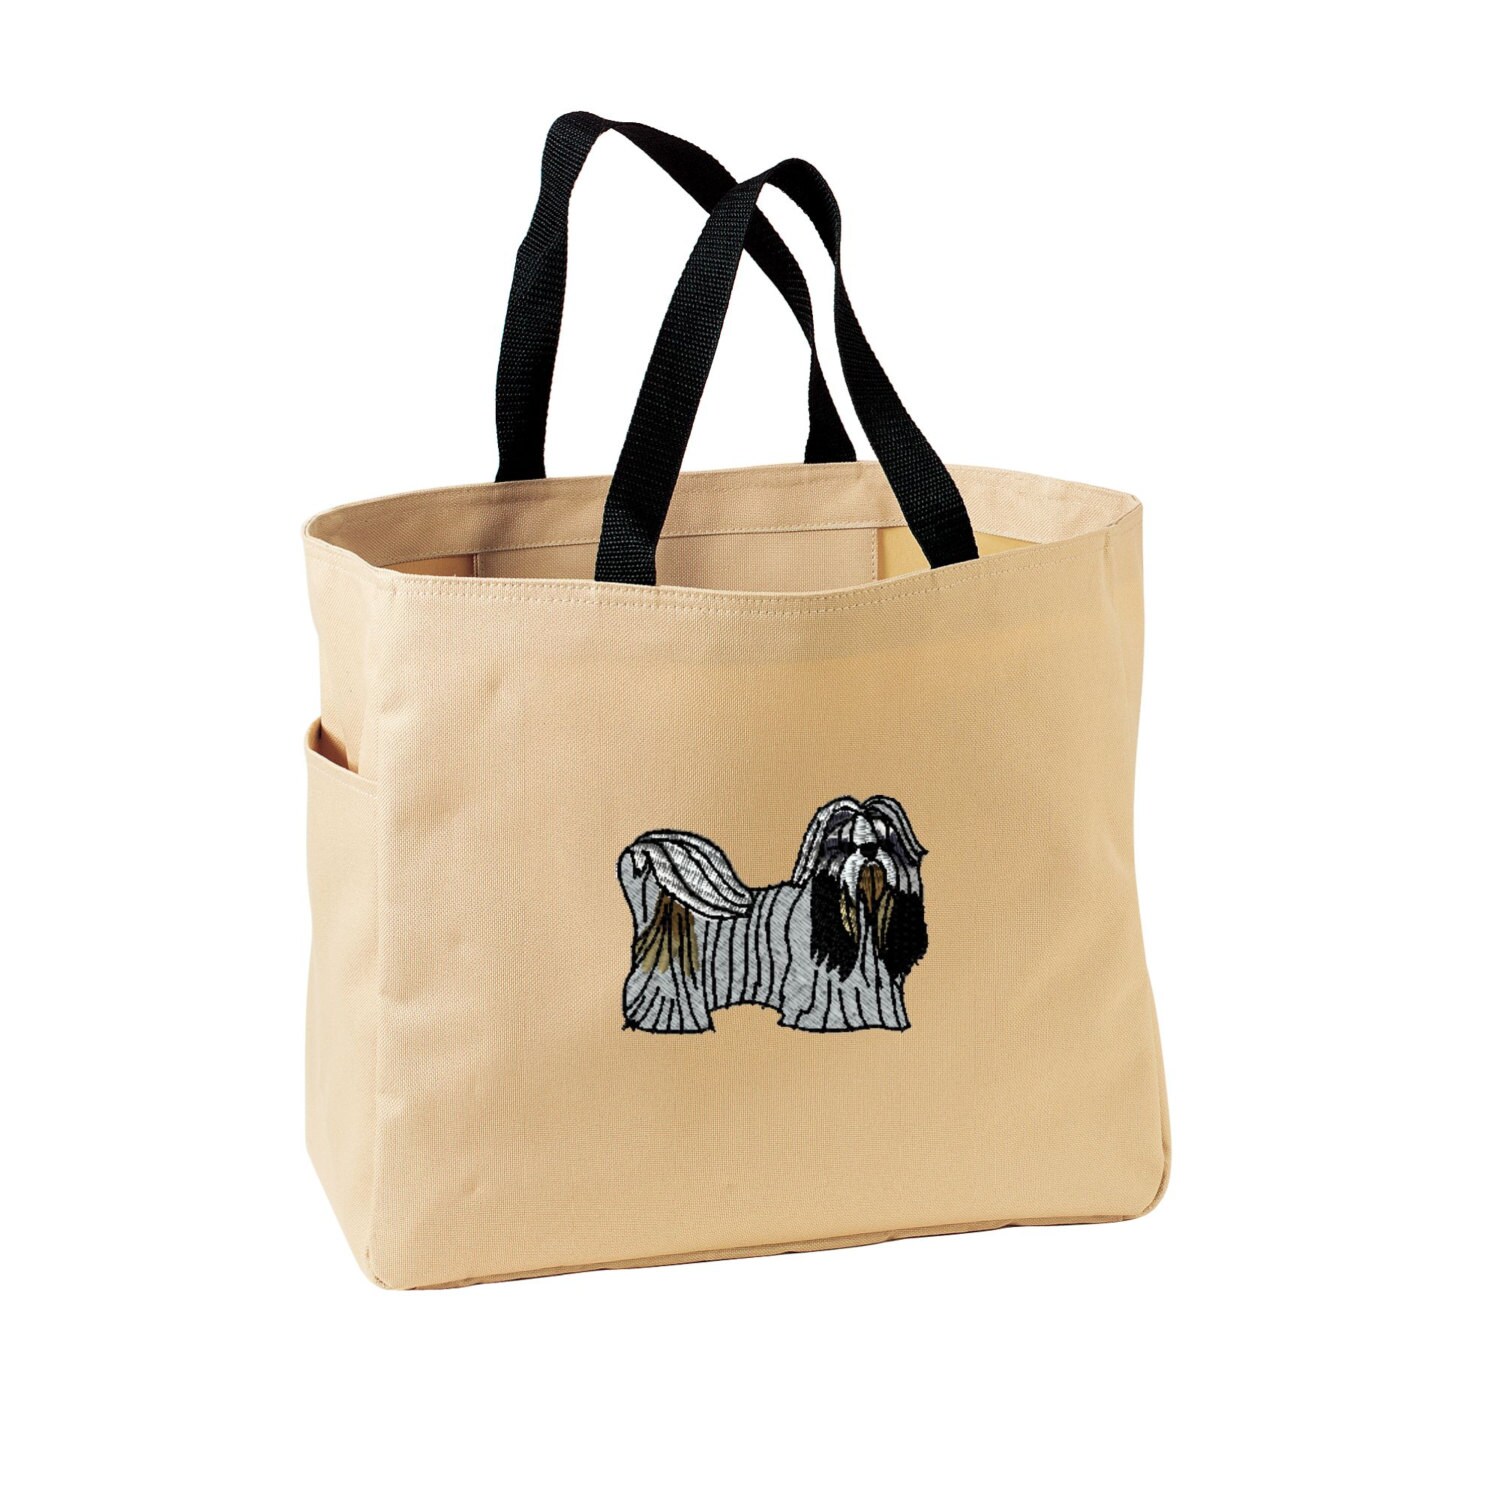 Shih Tzu Tote Bag. Embroidered Shih Tzu Tote. Cute Dog Pet